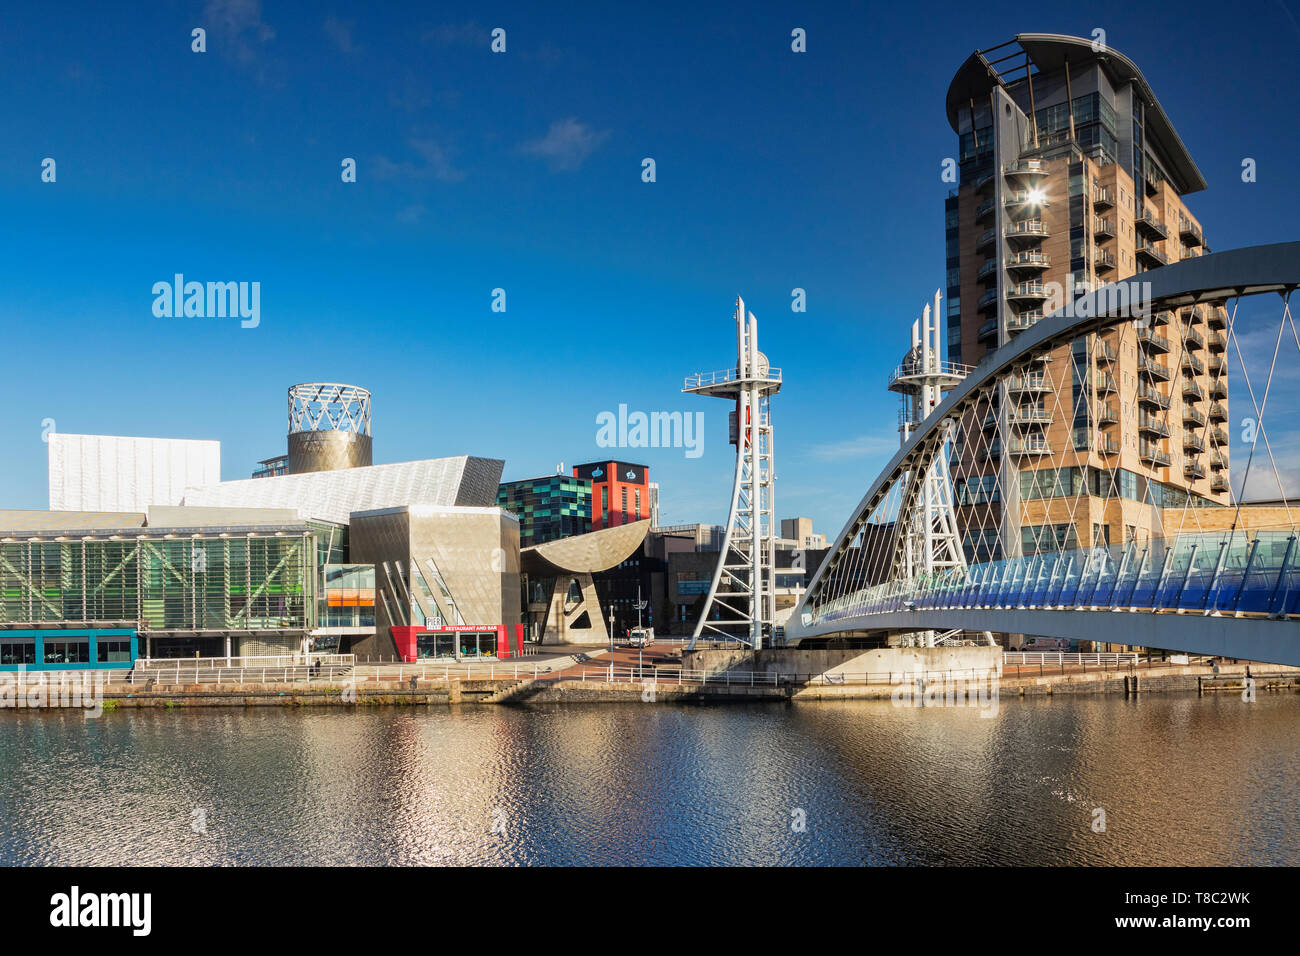 2 Novembre 2018: Salford Quays, Manchester, Regno Unito - Pier 8 e il Ponte di Lowry su una graziosa soleggiata giornata autunnale con cielo blu chiaro. Foto Stock